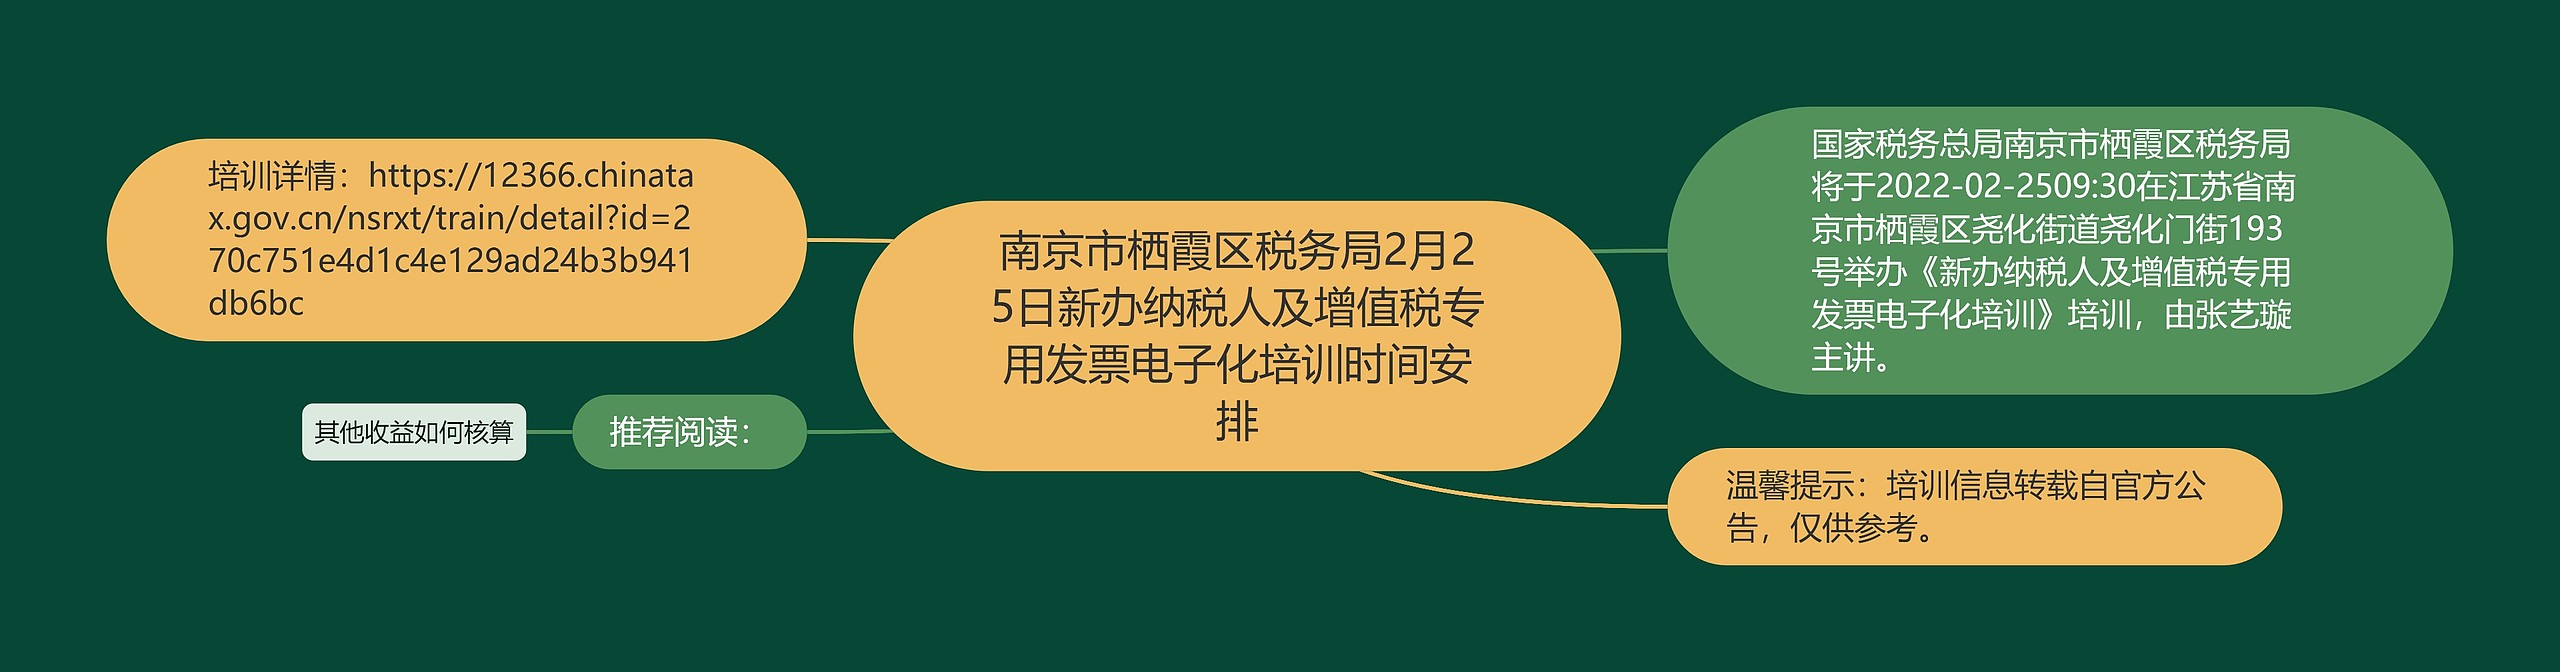 南京市栖霞区税务局2月25日新办纳税人及增值税专用发票电子化培训时间安排